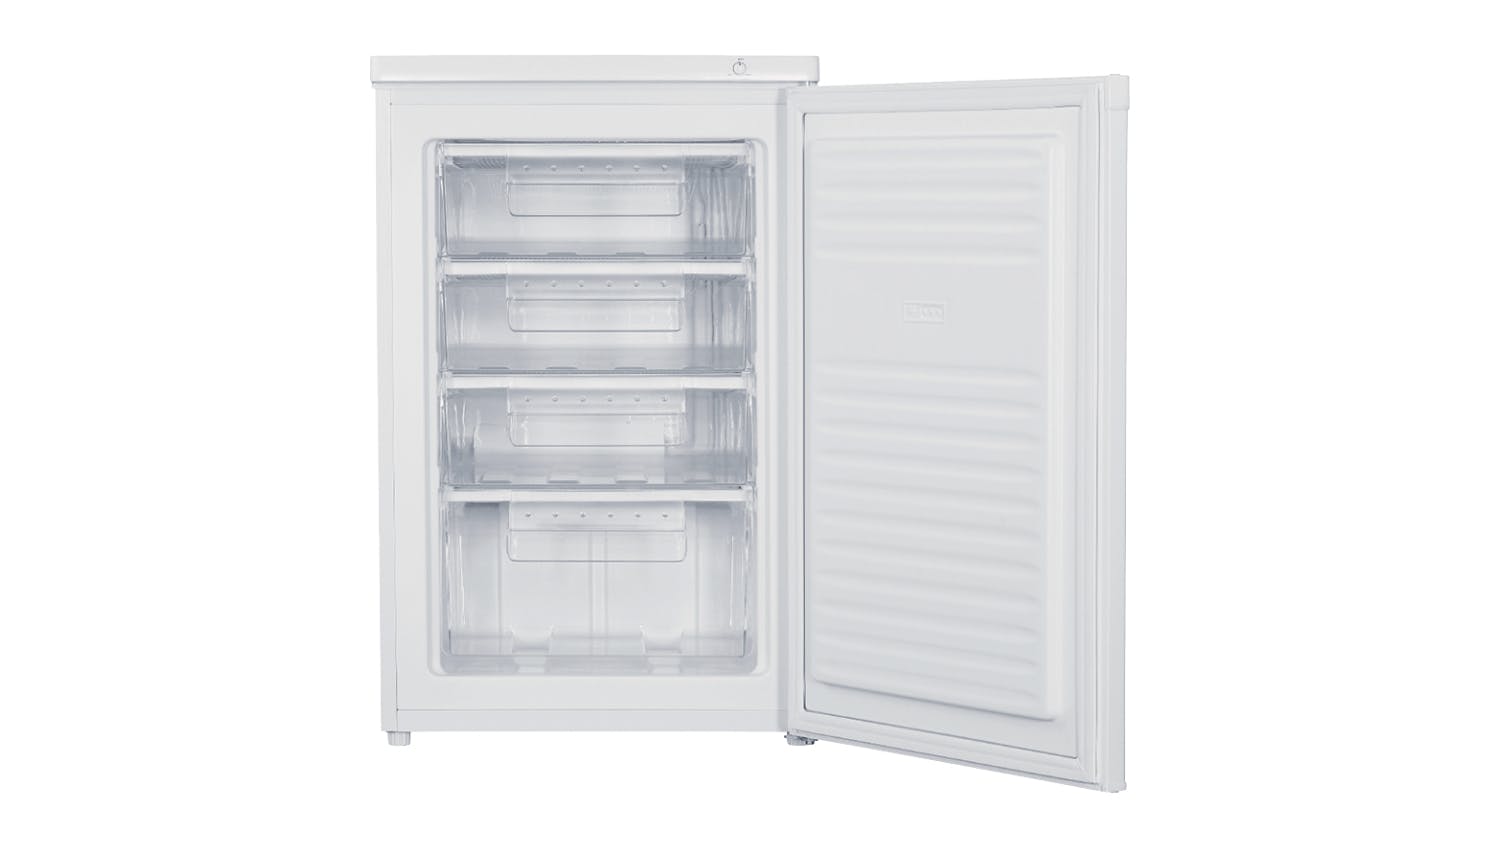 Haier 91L Single Door Vertical Freezer - White (HVF91VW)